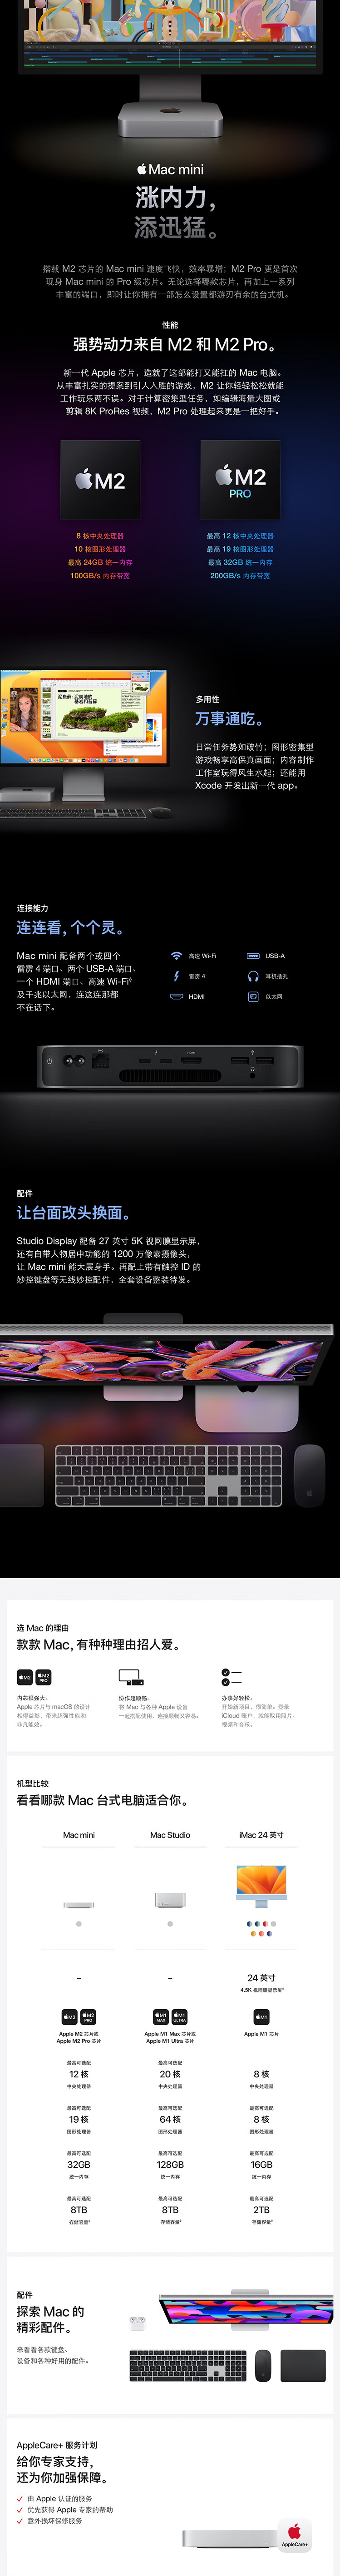 FireShot Capture 627 - 【AppleMac mini】Apple Mac mini 迷你主机 八核M2芯片 8G 1T SSD 台式电脑主机 Z16L0002R【_ - item.jd.com.png